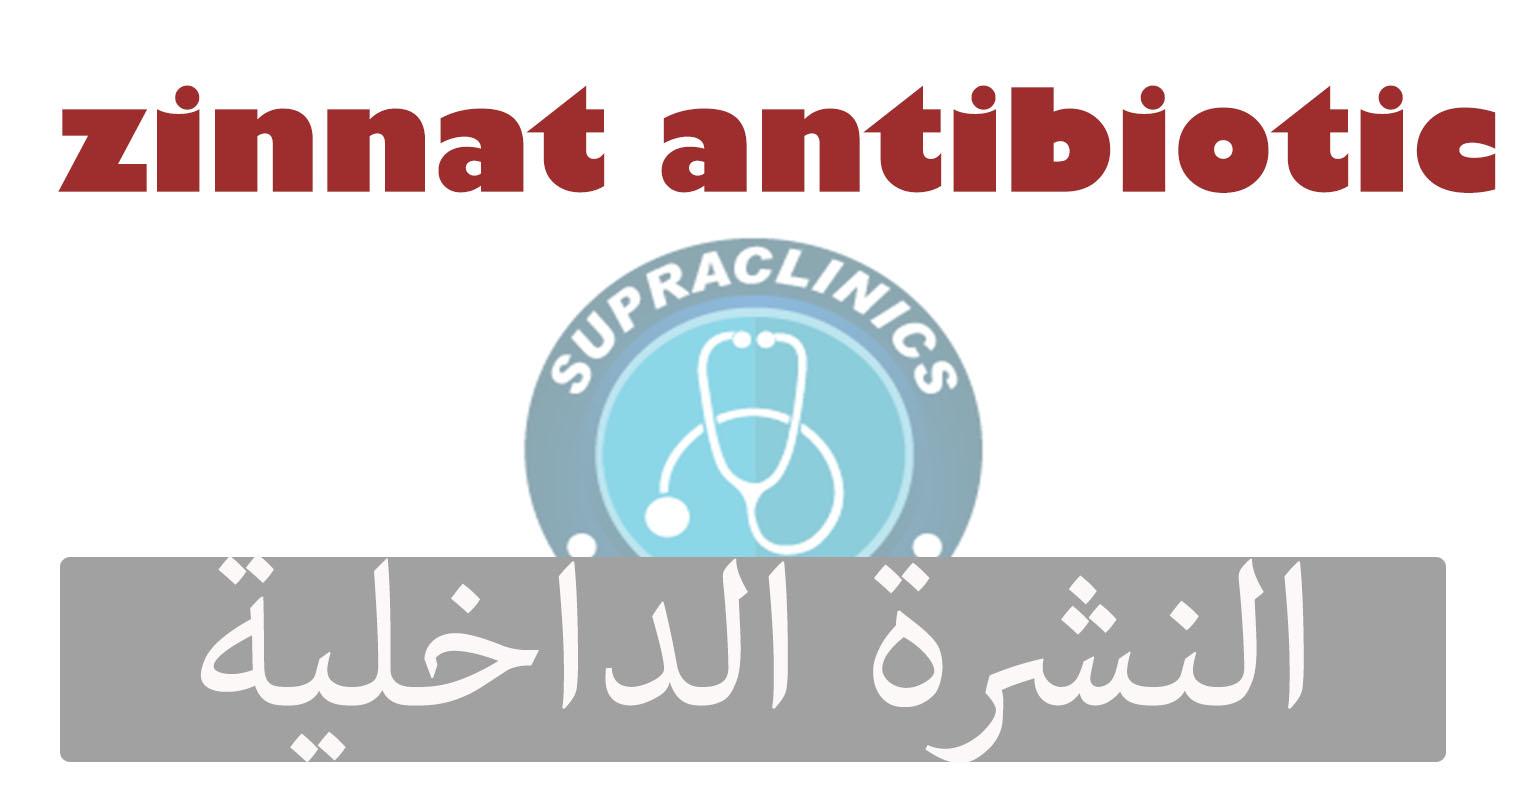 zinnat antibiotic